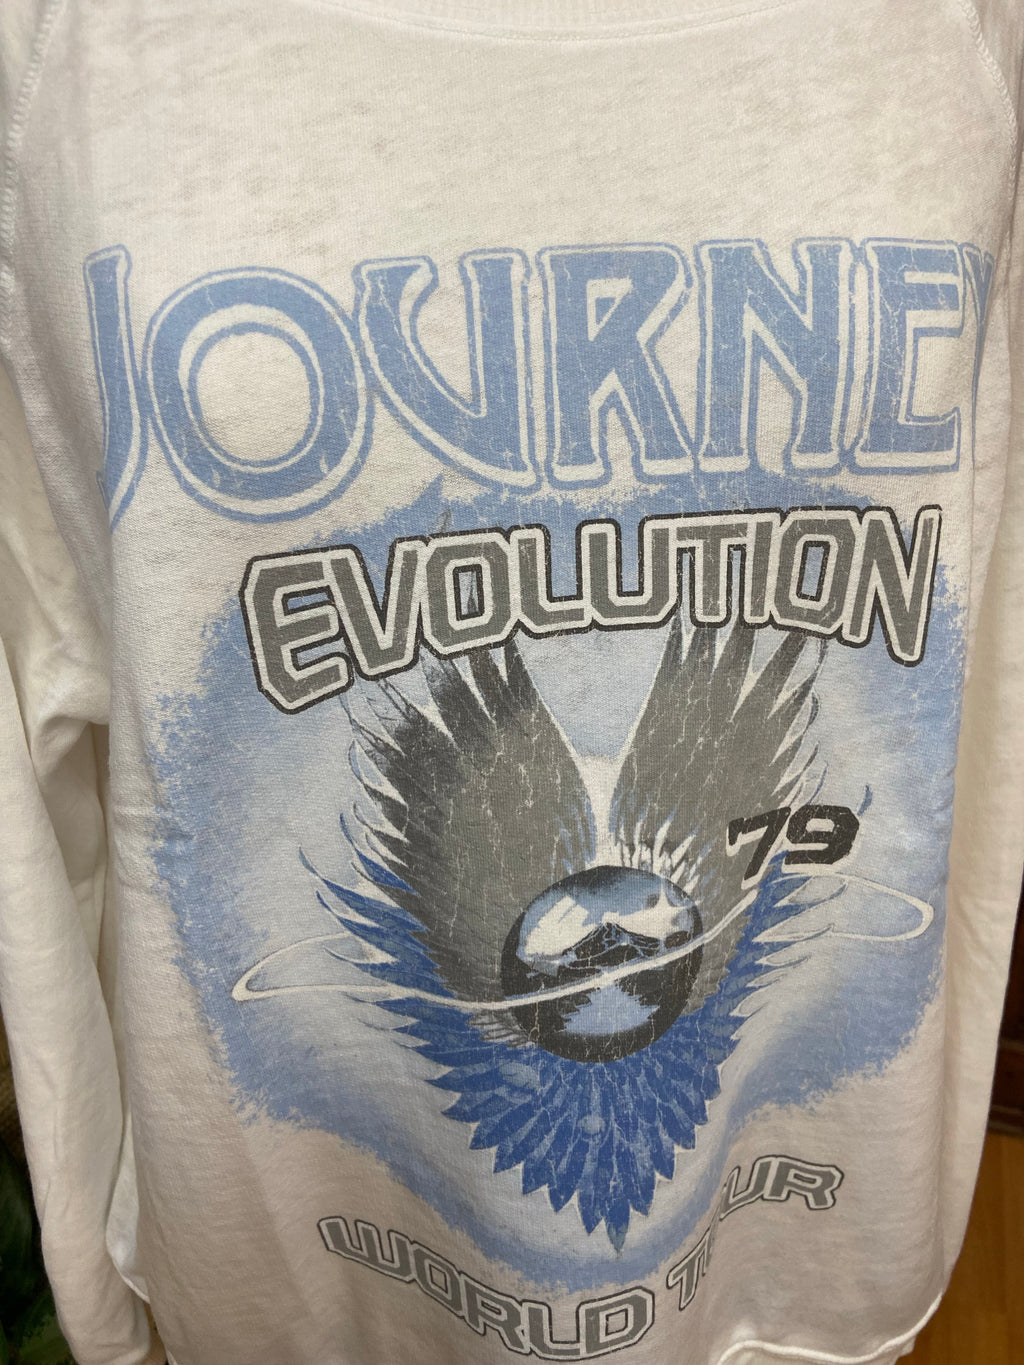 Journey Evolution World Tour Sweatshirt